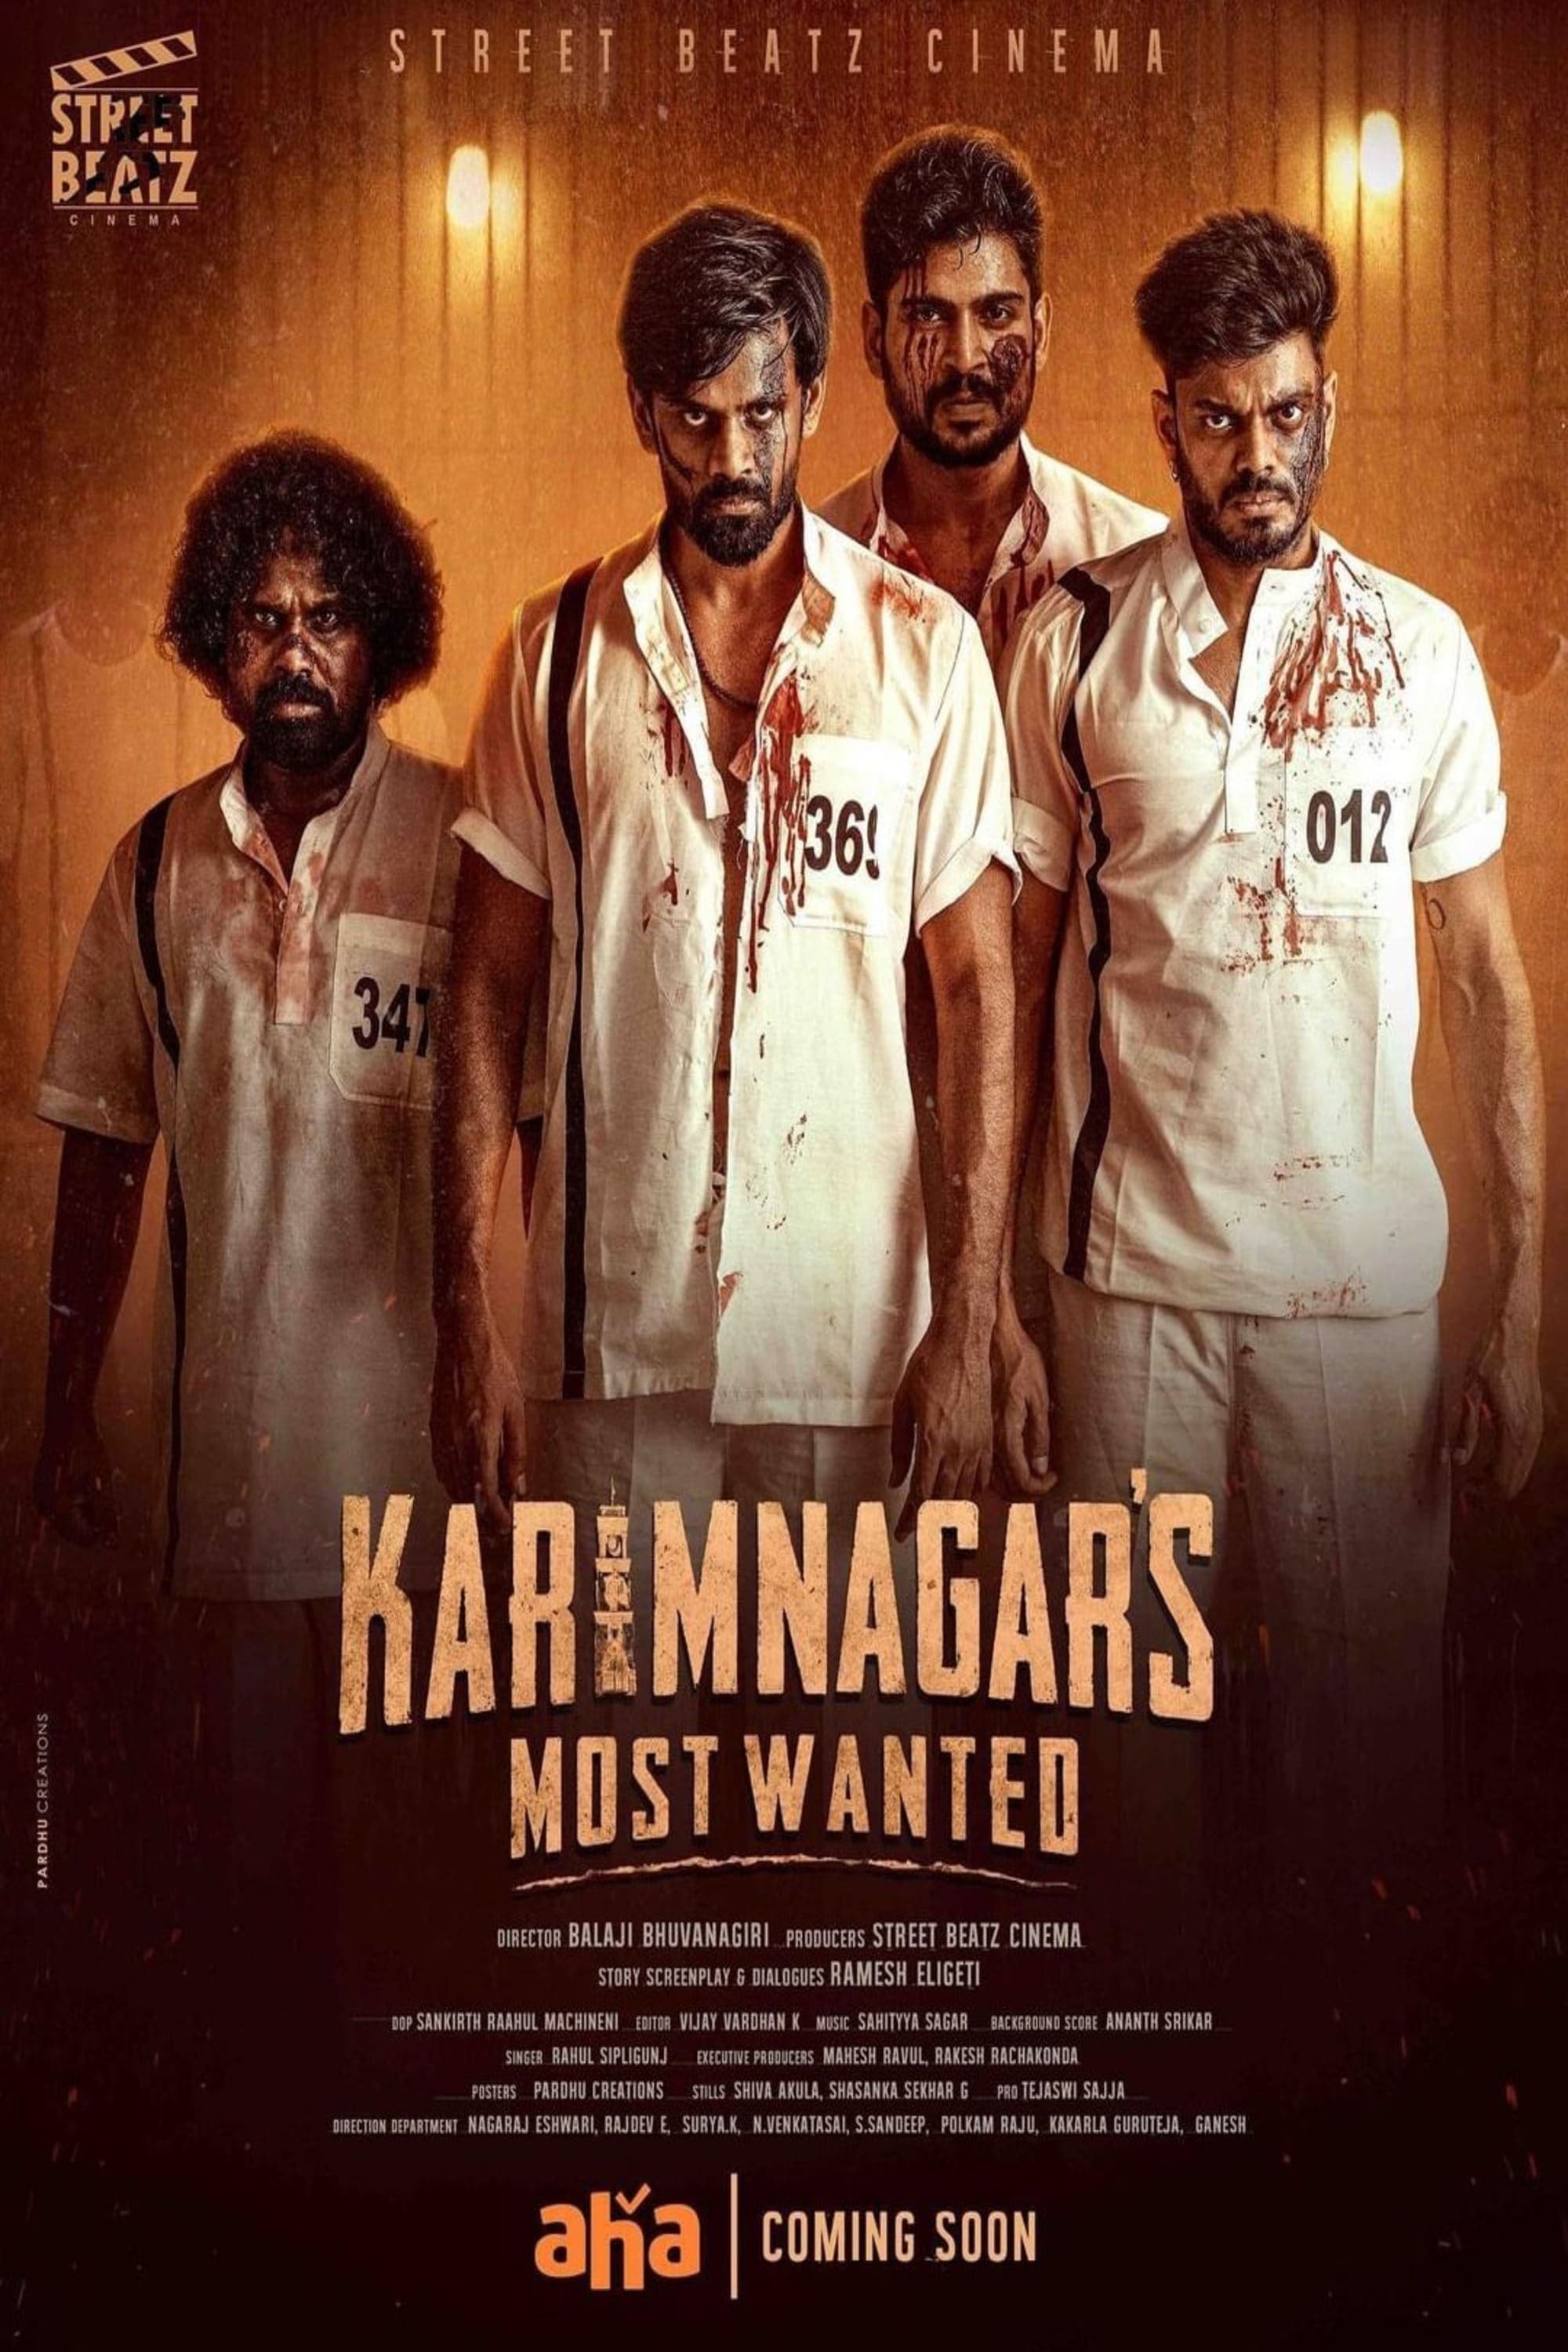 Karimnagar’s Most Wanted